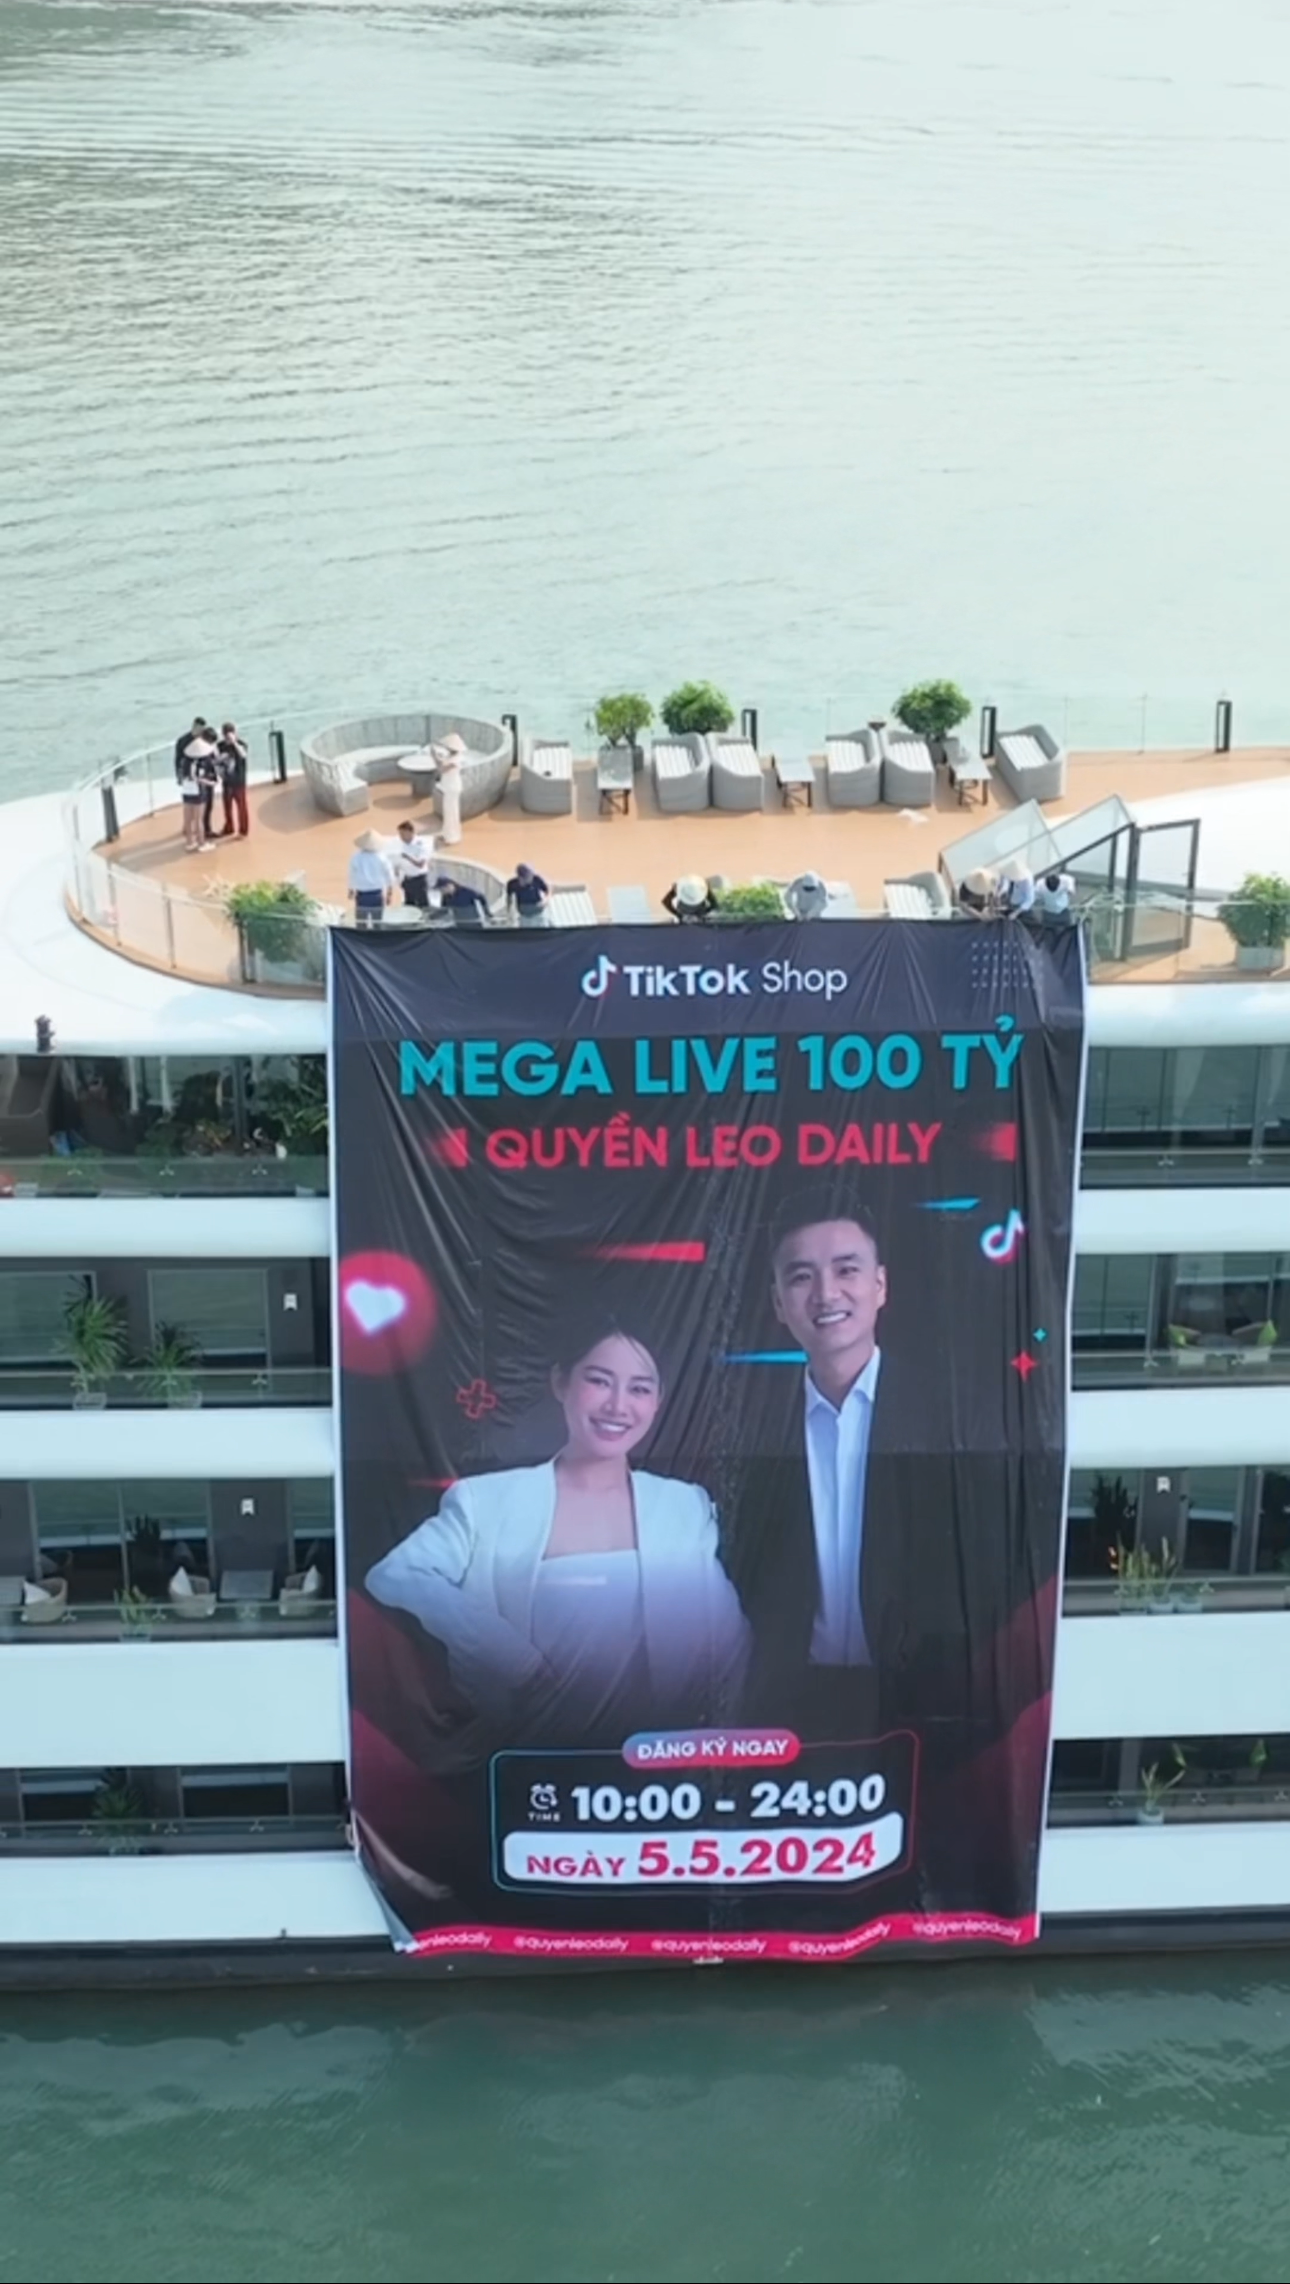 Chủ 1 kênh TikTok công bố phiên livestream phá vỡ kỷ lục Đông Nam Á: Nhận tài trợ 1 triệu đô, doanh thu kỳ vọng đạt 100 tỷ đồng, thuê hẳn du thuyền 5 sao để làm chiến dịch - Ảnh 3.